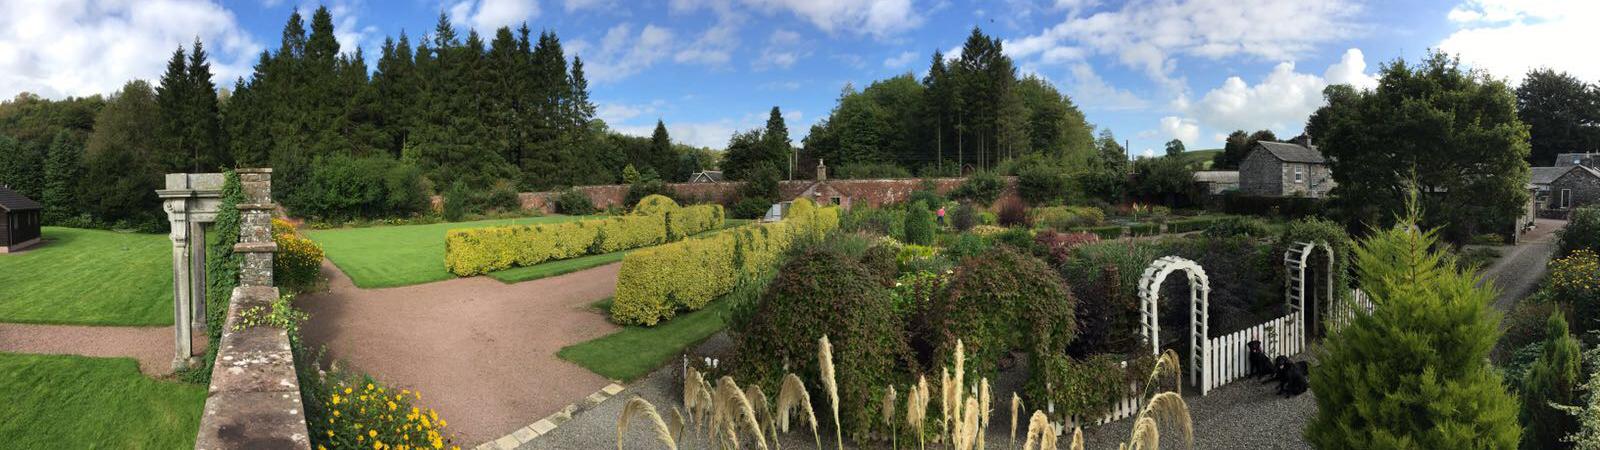 Queenshill estate walled garden